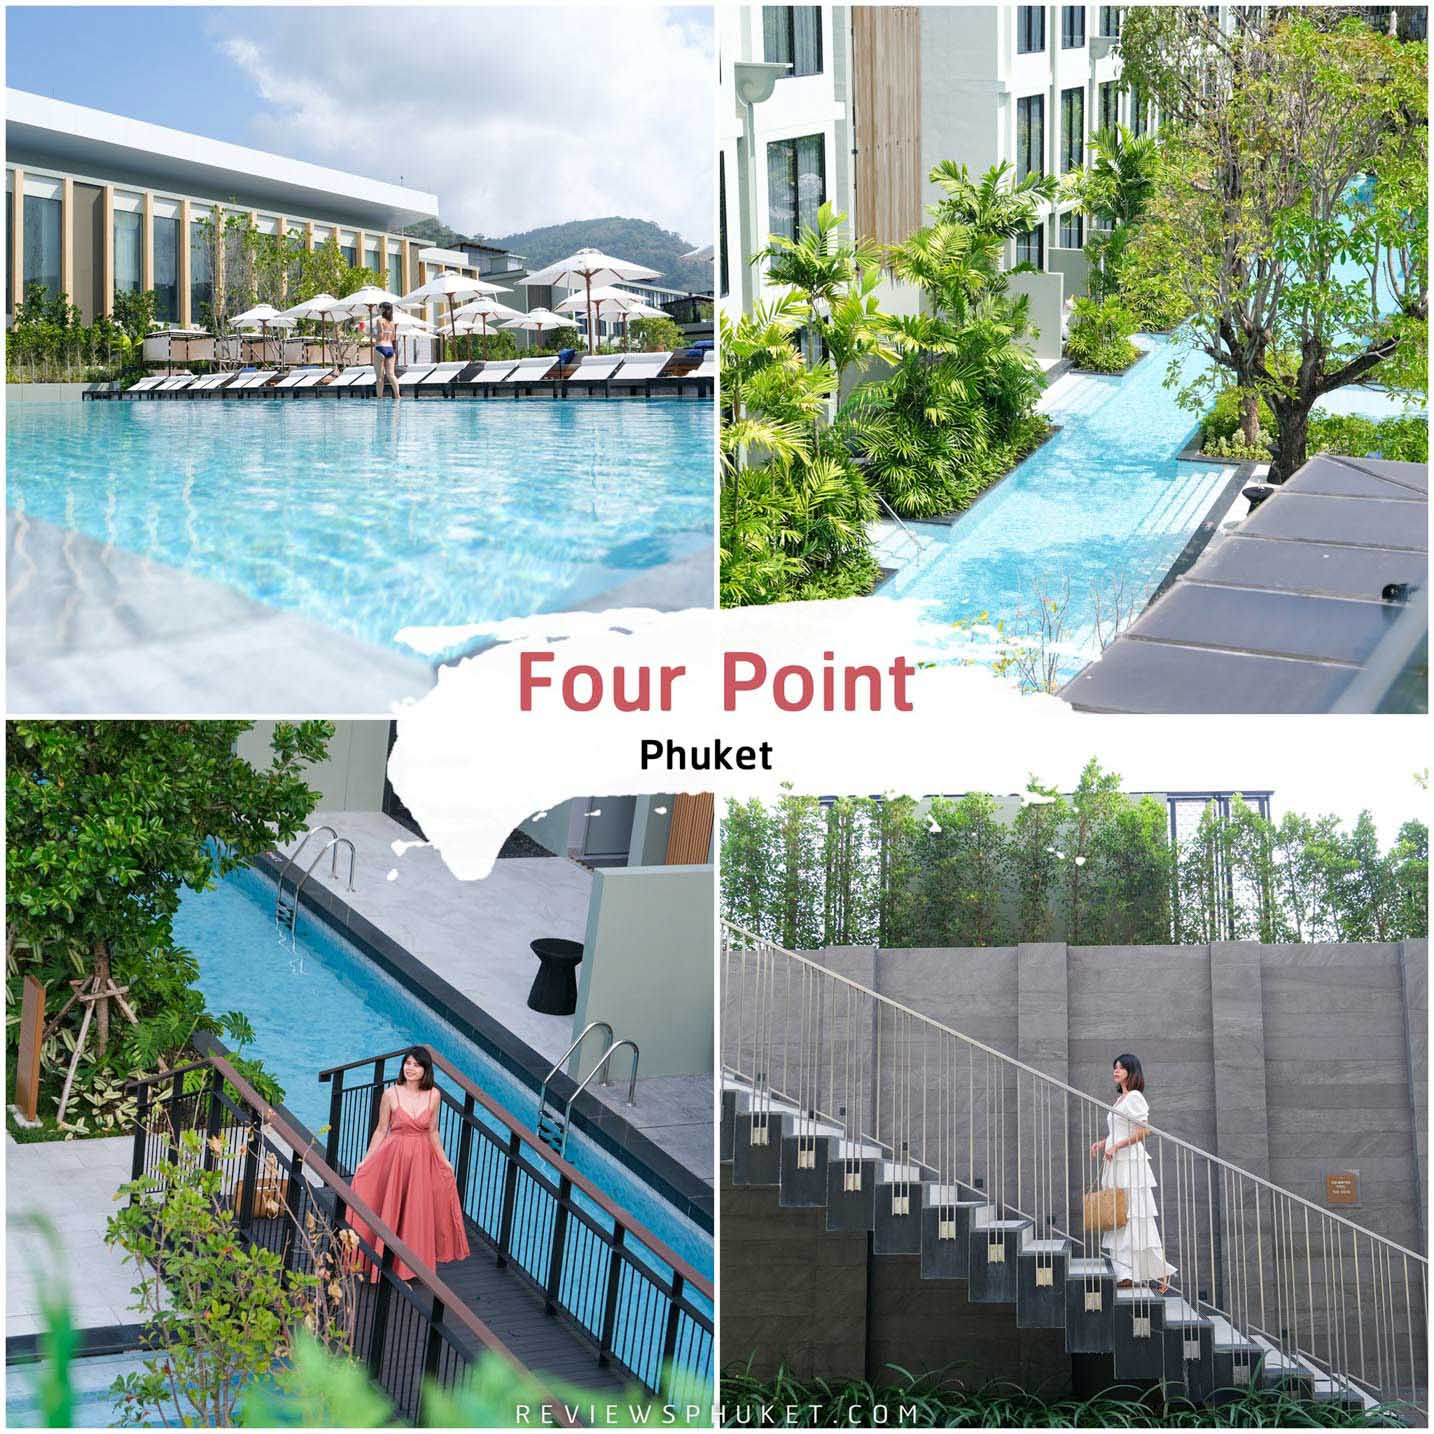 Four Point Phuket ที่พักสุดสวยภูเก็ต ริมหาดป่าตอง วิวหลักล้าน ออกแบบสถาปัตยกรรมไม่เหมือนใคร